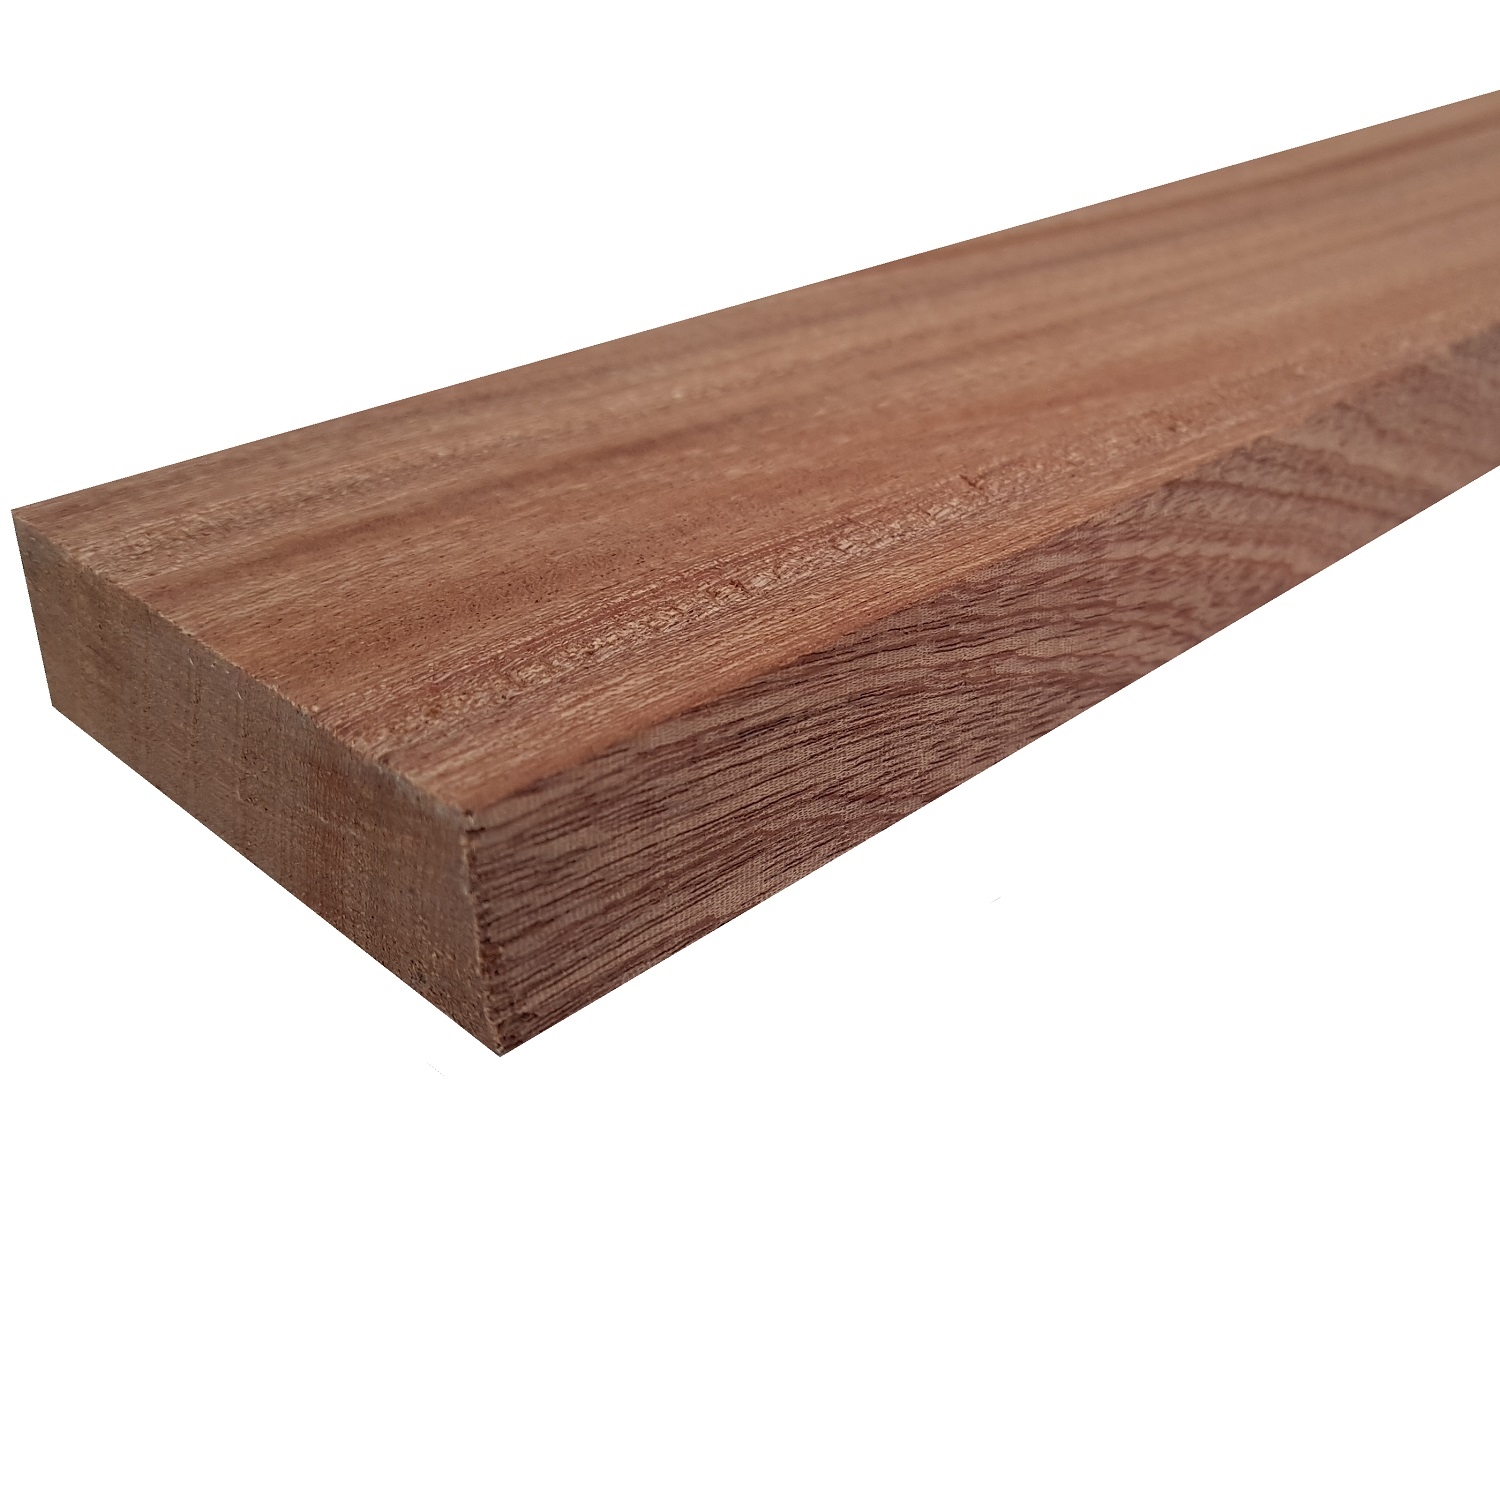 Tavola legno di Mogano Refilato Piallato mm 21 x 230 x 1500